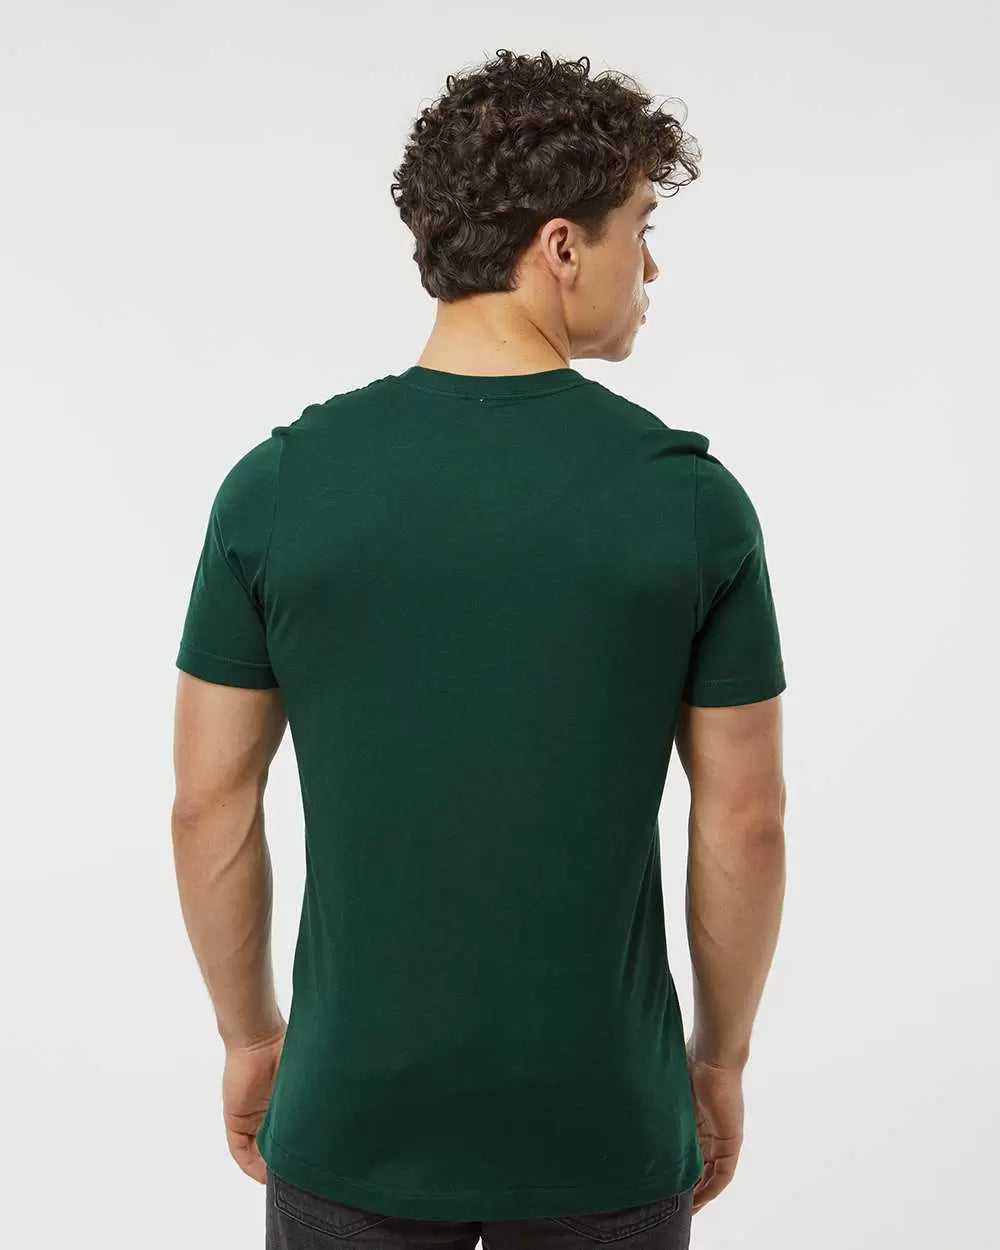 Tultex 502 Premium Cotton T-Shirt - Forest - HIT a Double - 3